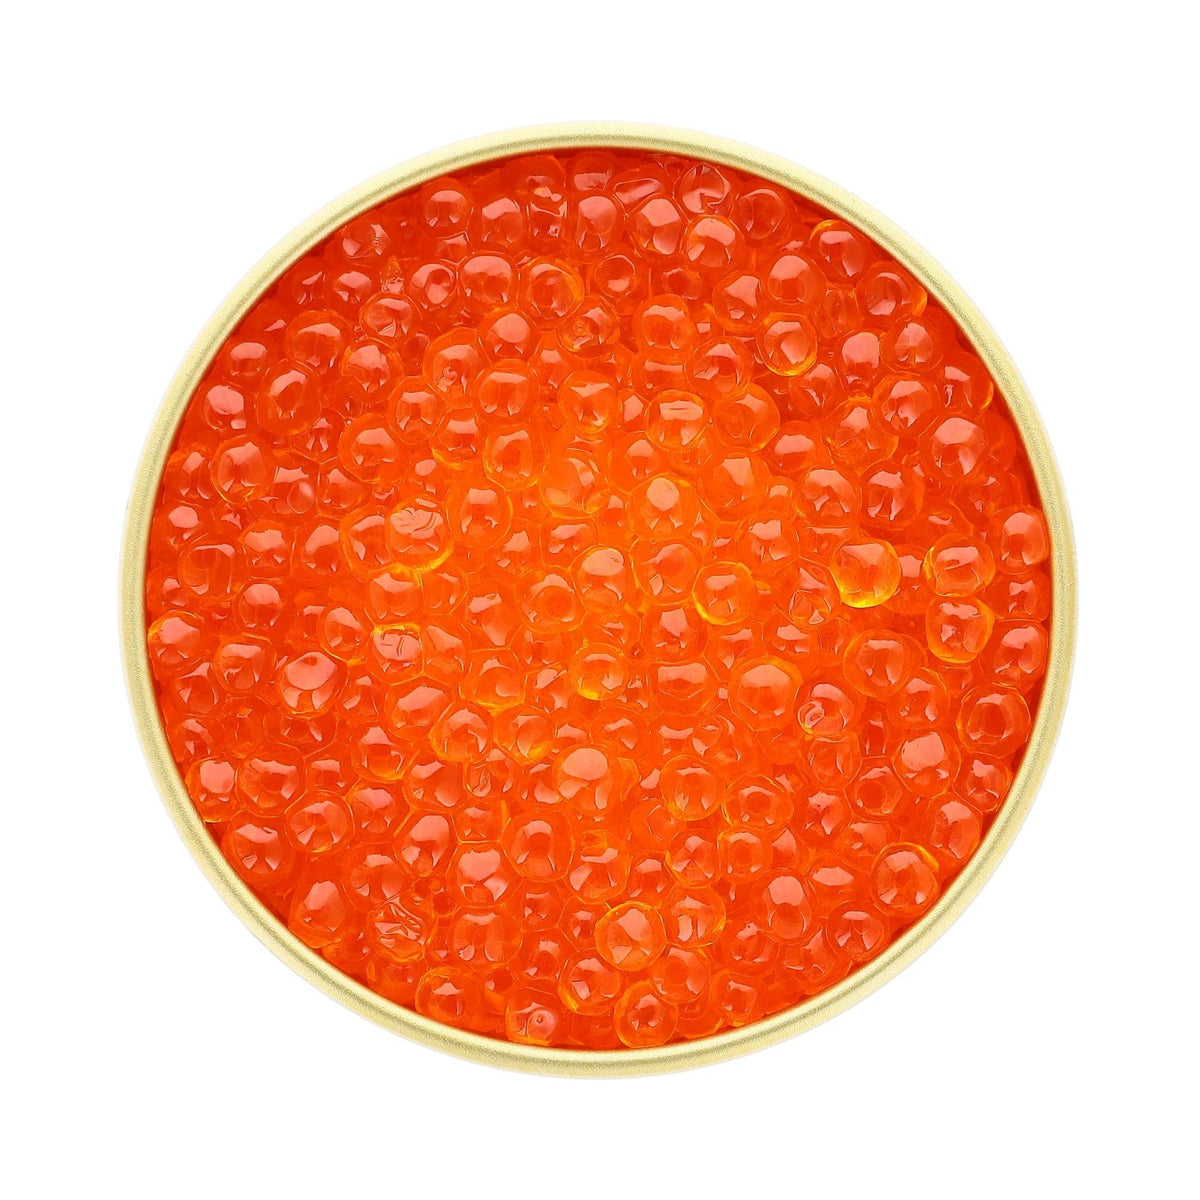 Trout Roe - Petrovich Caviar 